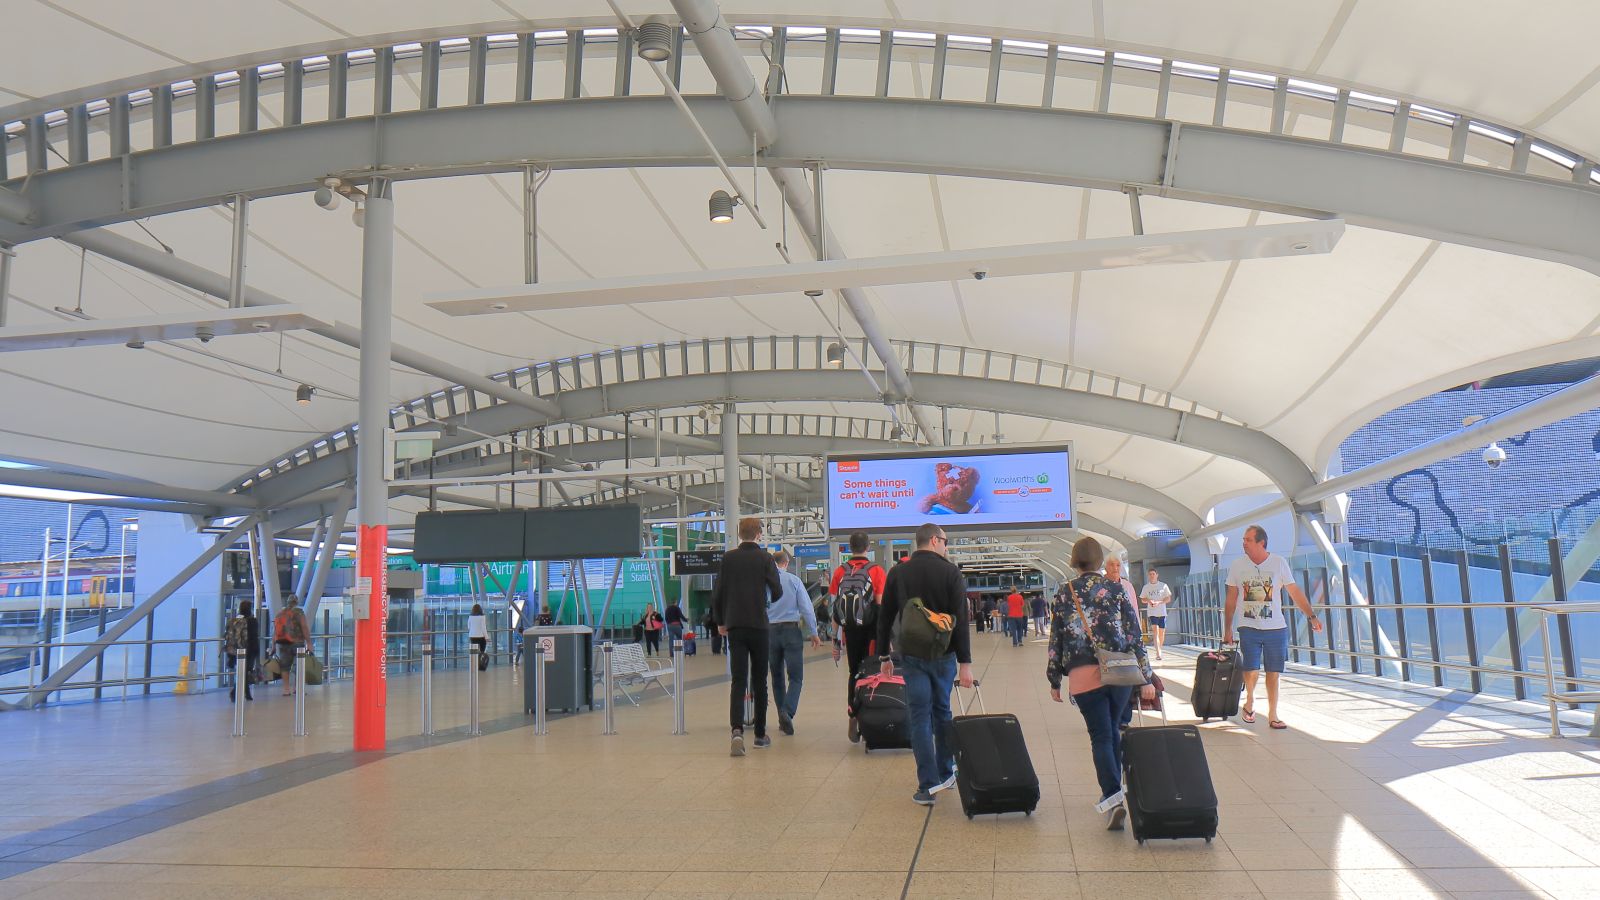 Brisbane Airport Airtrain station